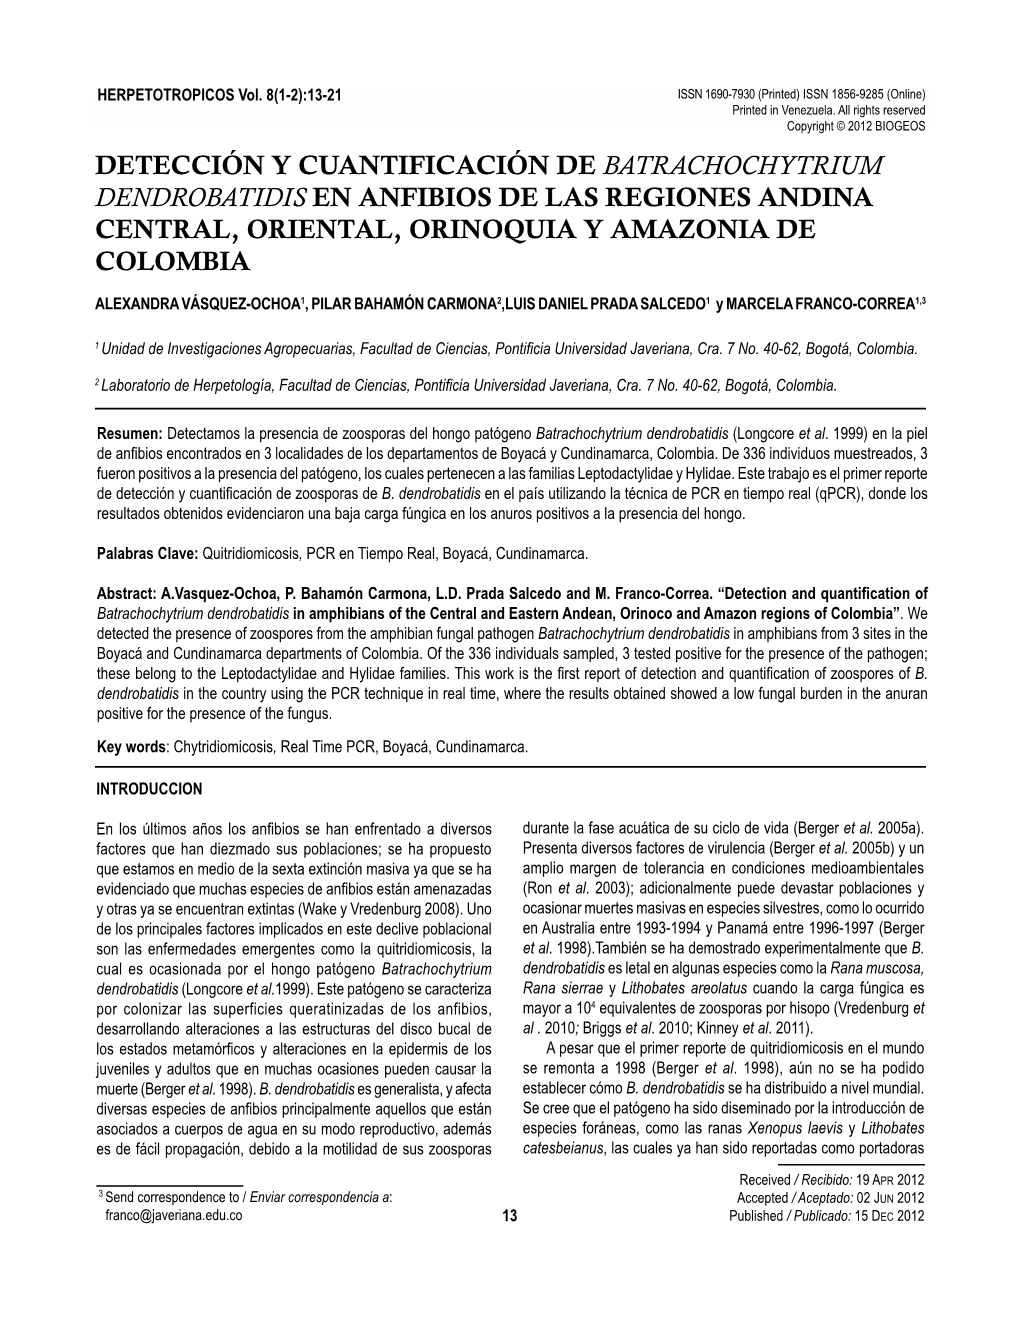 Detección Y Cuantificación De Batrachochytrium Dendrobatidis En Anfibios De Las Regiones Andina Central, Oriental, Orinoquia Y Amazonia De Colombia